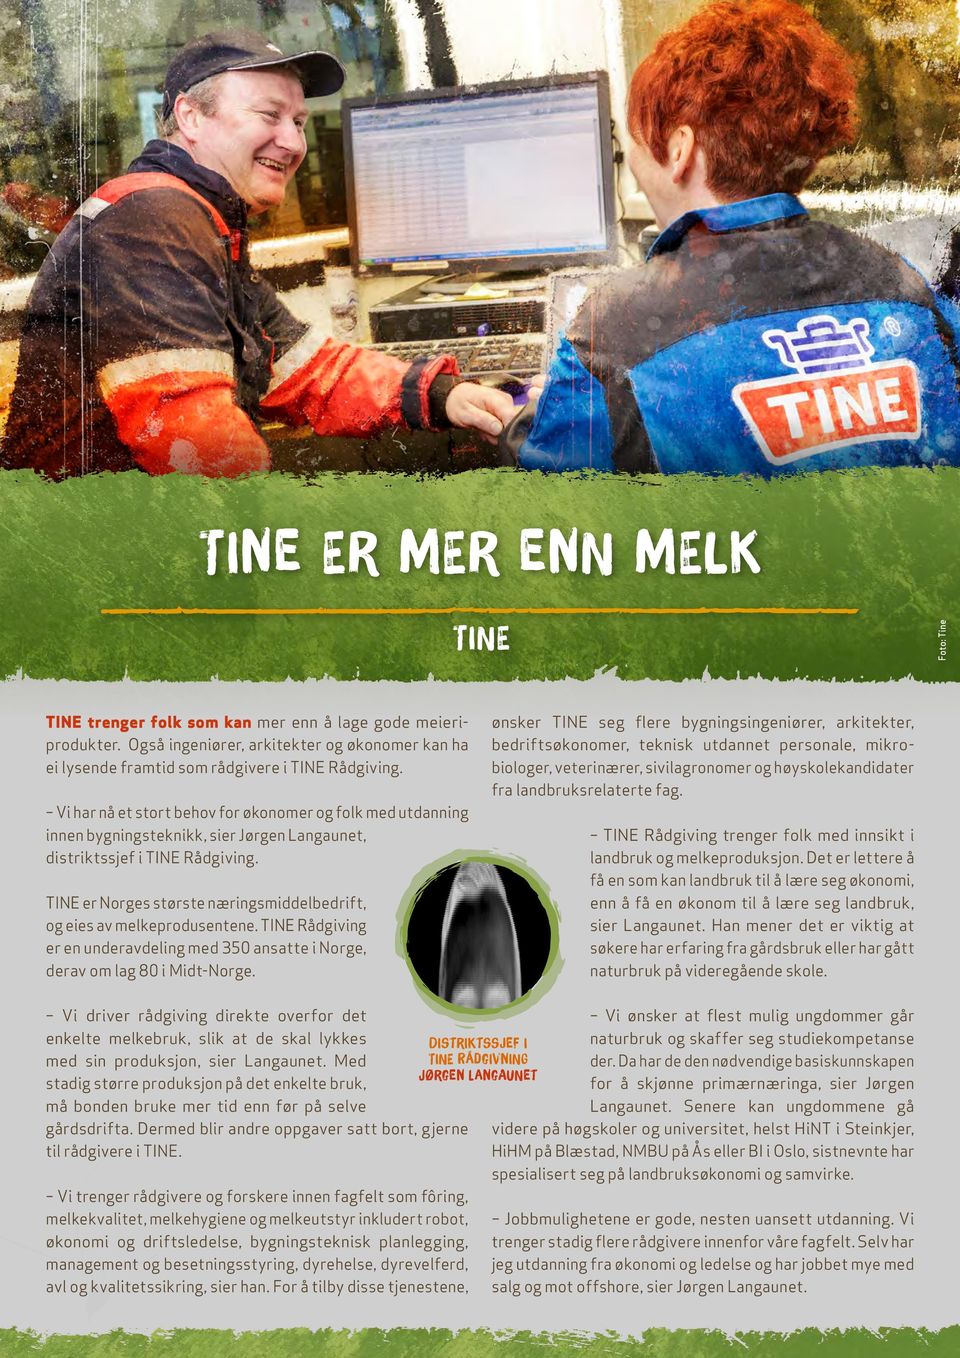 TINE er Norges største næringsmiddelbedrift, og eies av melkeprodusentene. TINE Rådgiving er en underavdeling med 350 ansatte i Norge, derav om lag 80 i Midt-Norge.